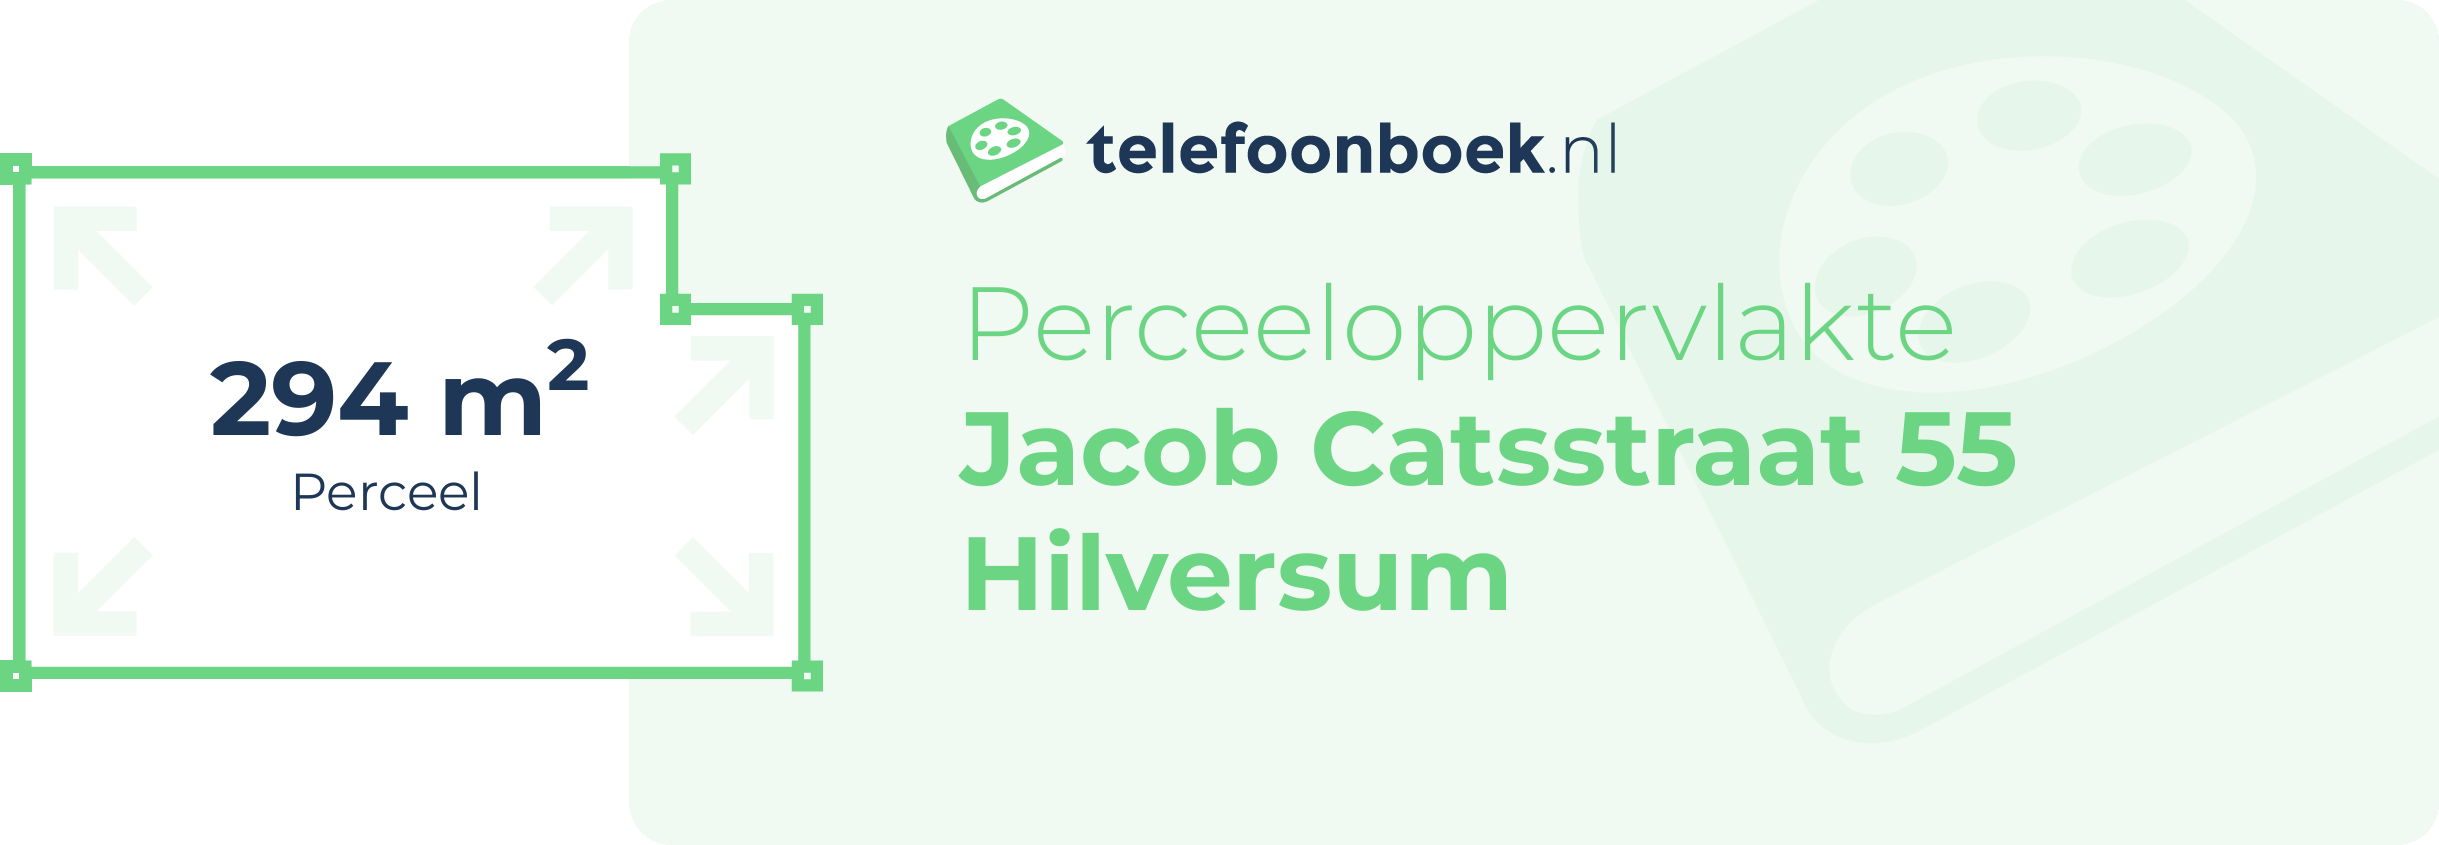 Perceeloppervlakte Jacob Catsstraat 55 Hilversum